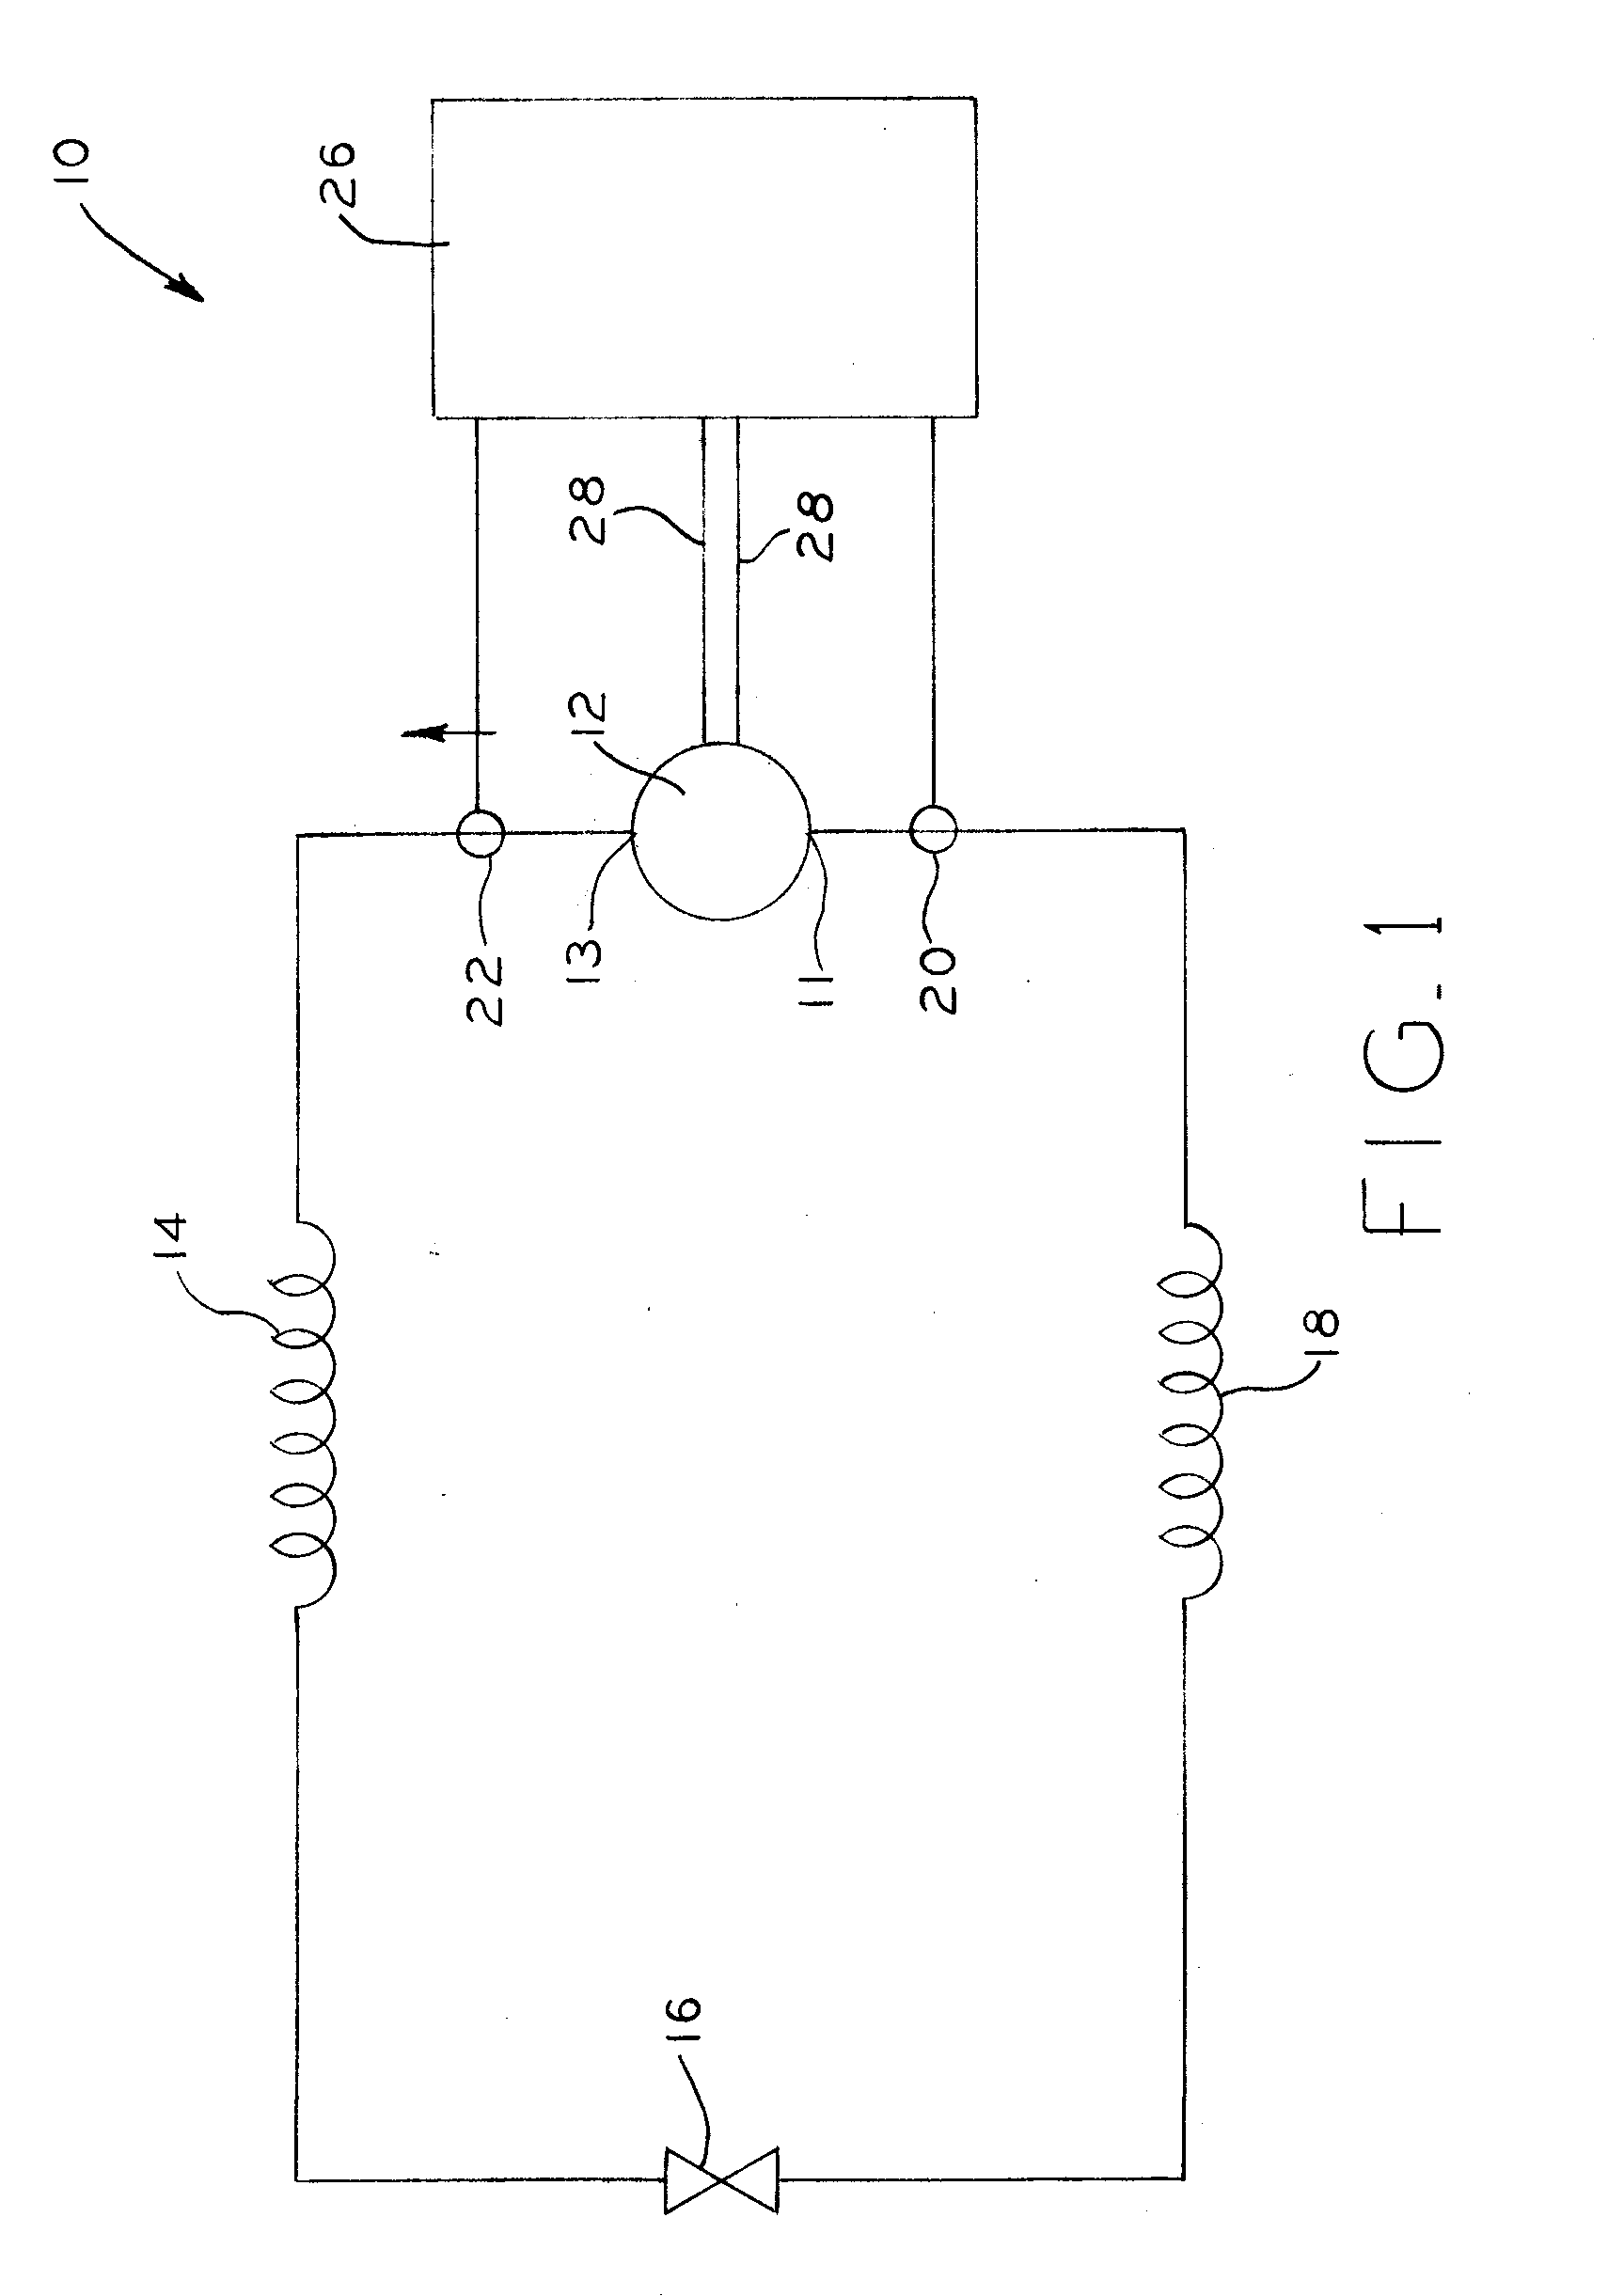 Capacity control of a compressor